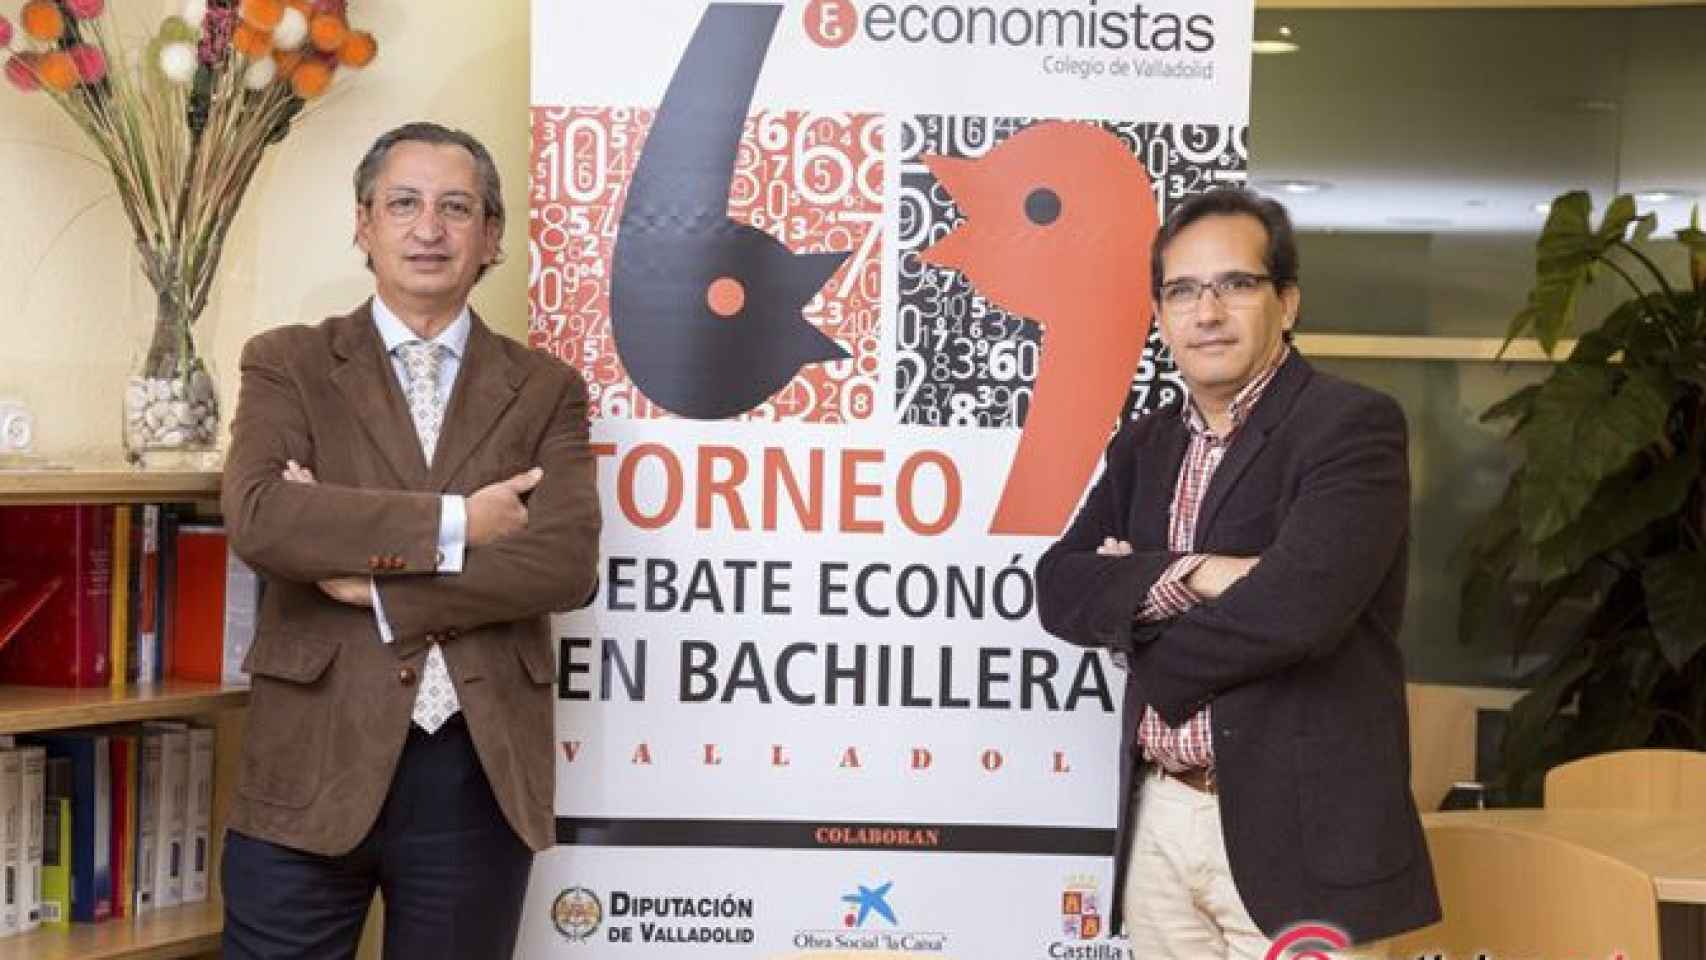 Valladolid-Debates-economicos-Ecova